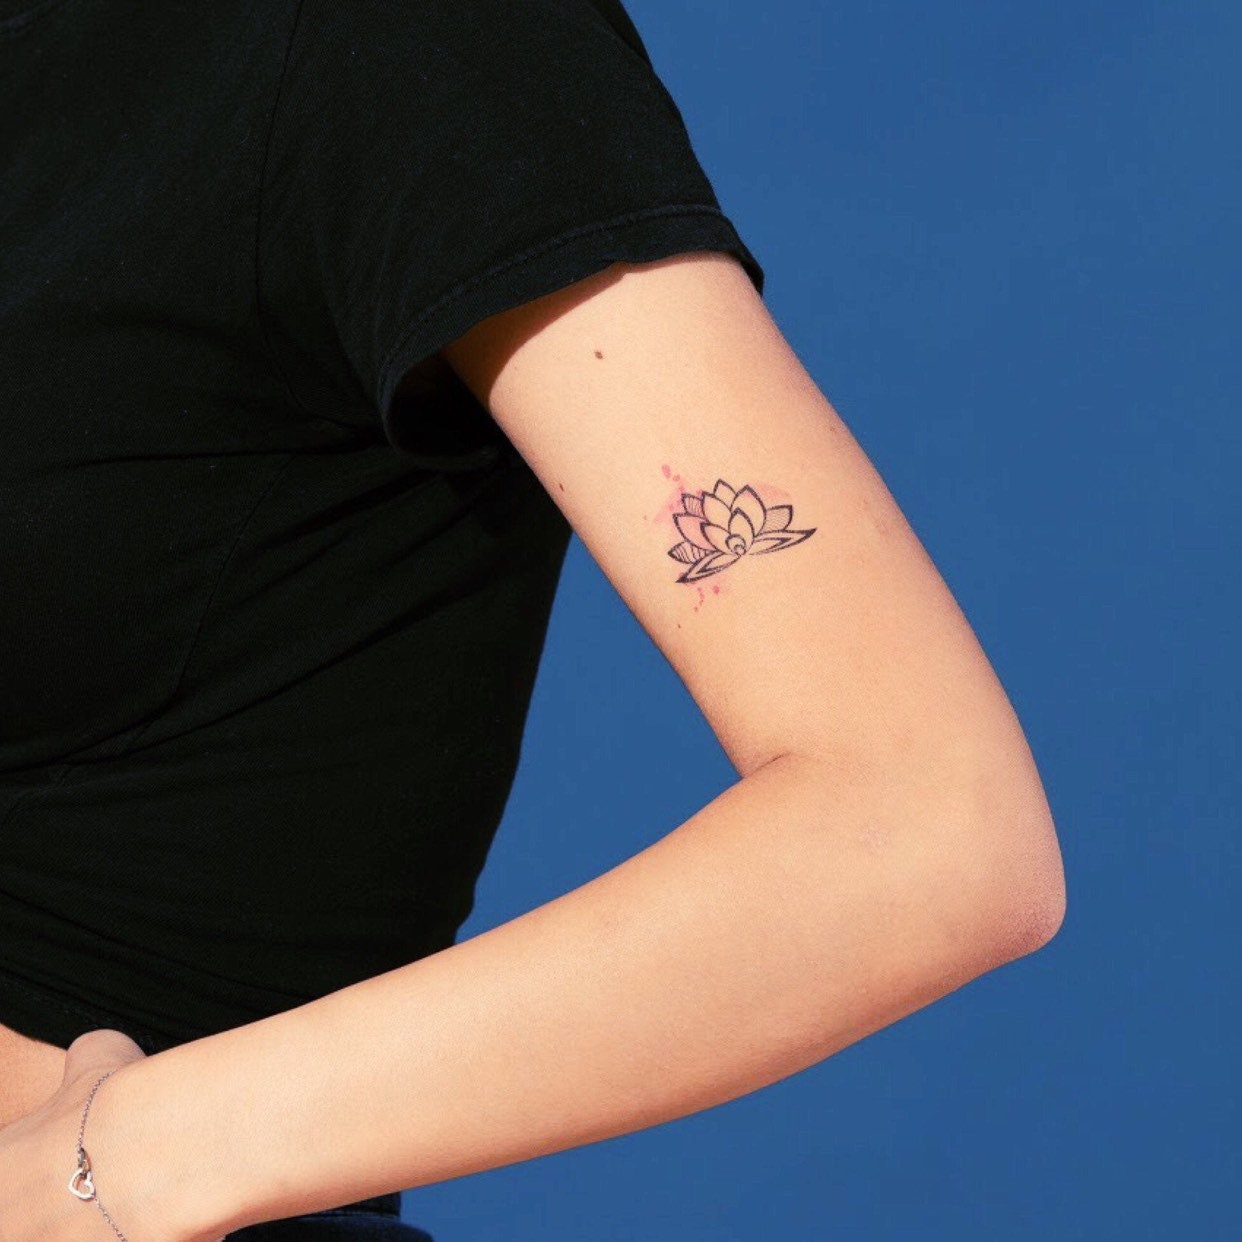 Small Lotus Temporary Tattoo in Pink Watercolor | Yoga design, spiritual symbol, set of 3